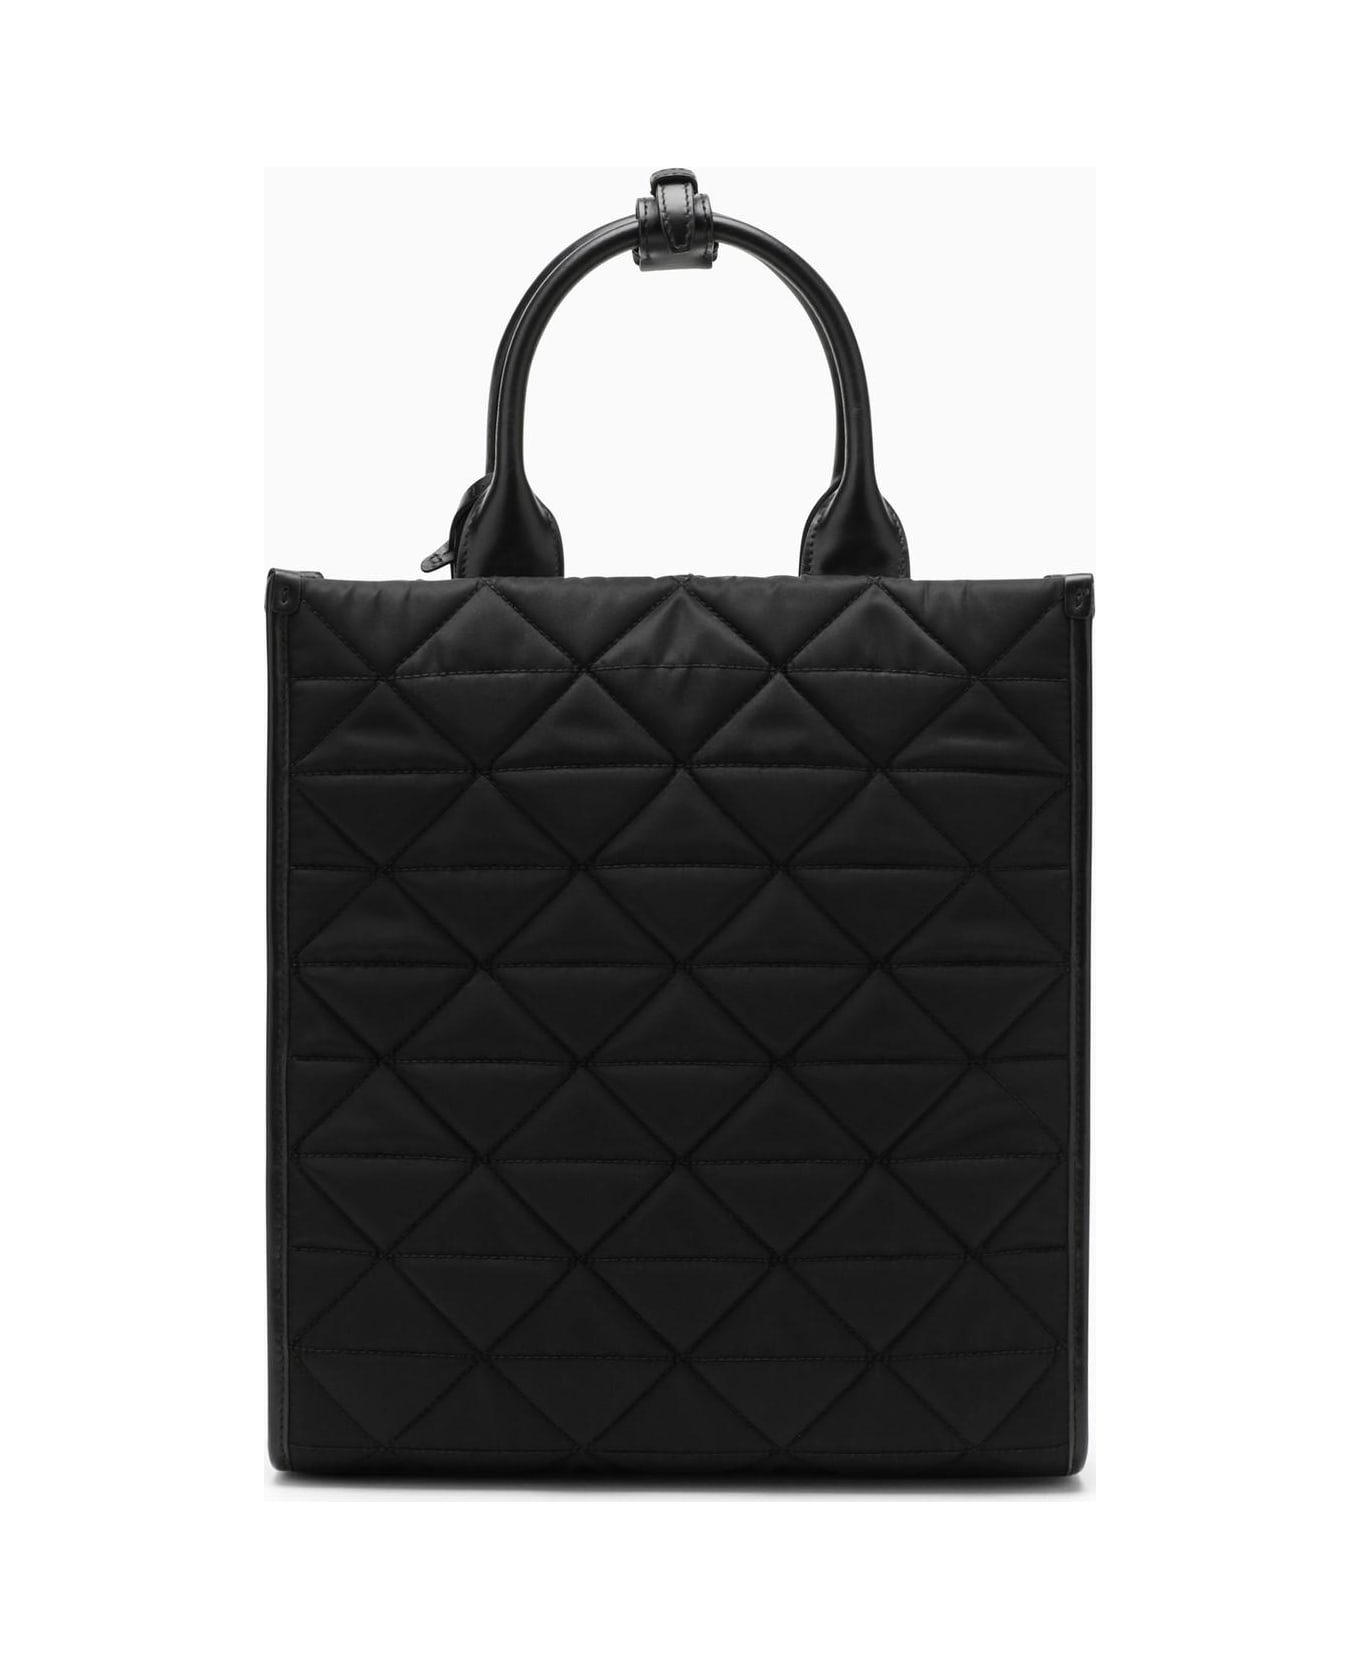 Prada Black Re-nylon Tote Bag - Nero トートバッグ